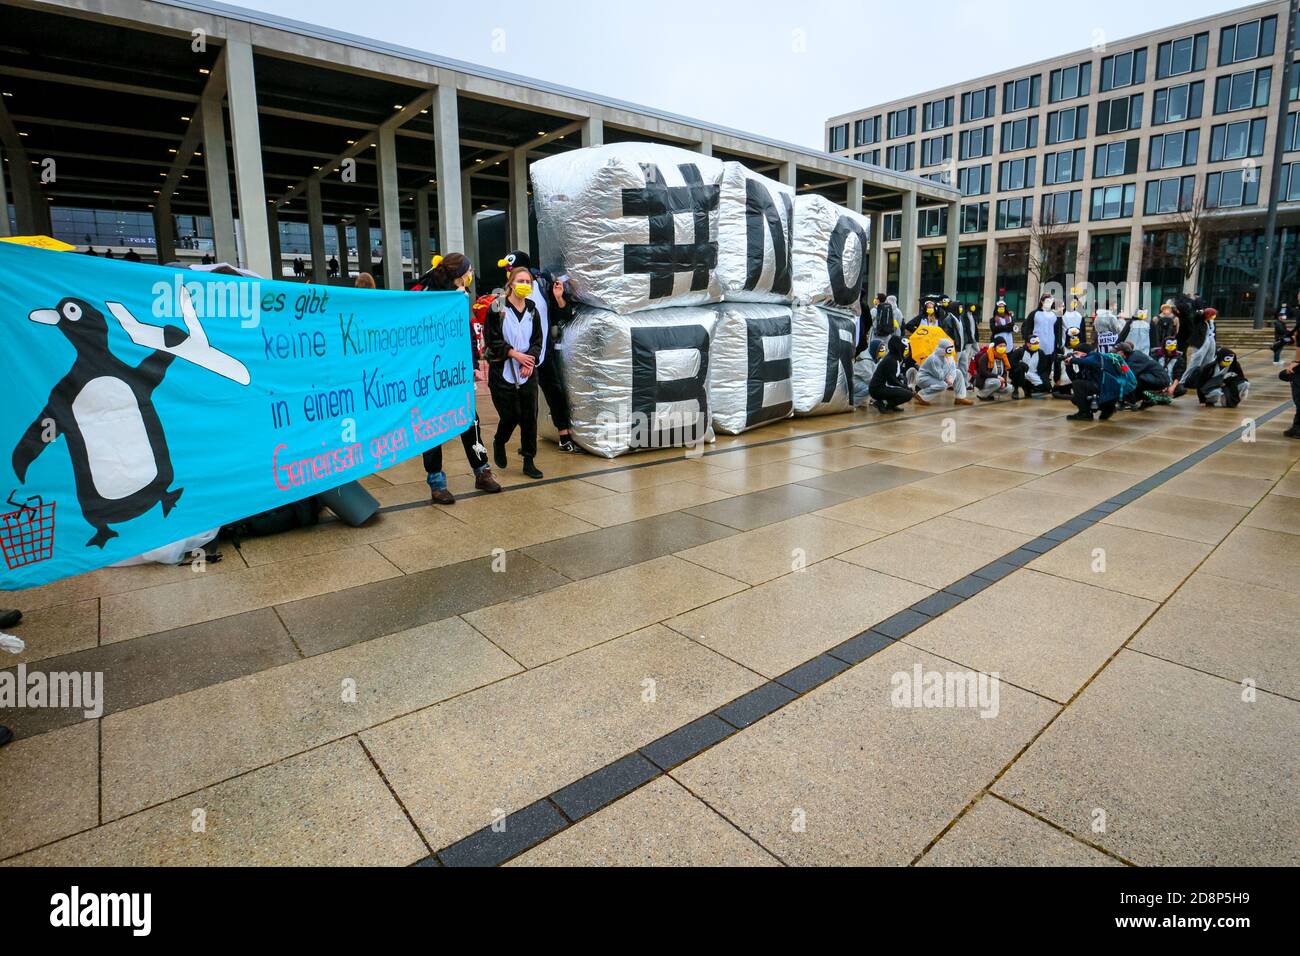 ' NOBER' viene scritto come attivisti climatici in costumi di pinguino protestano per l'apertura del nuovo aeroporto internazionale di Berlino Brandeburgo (BER). Foto Stock